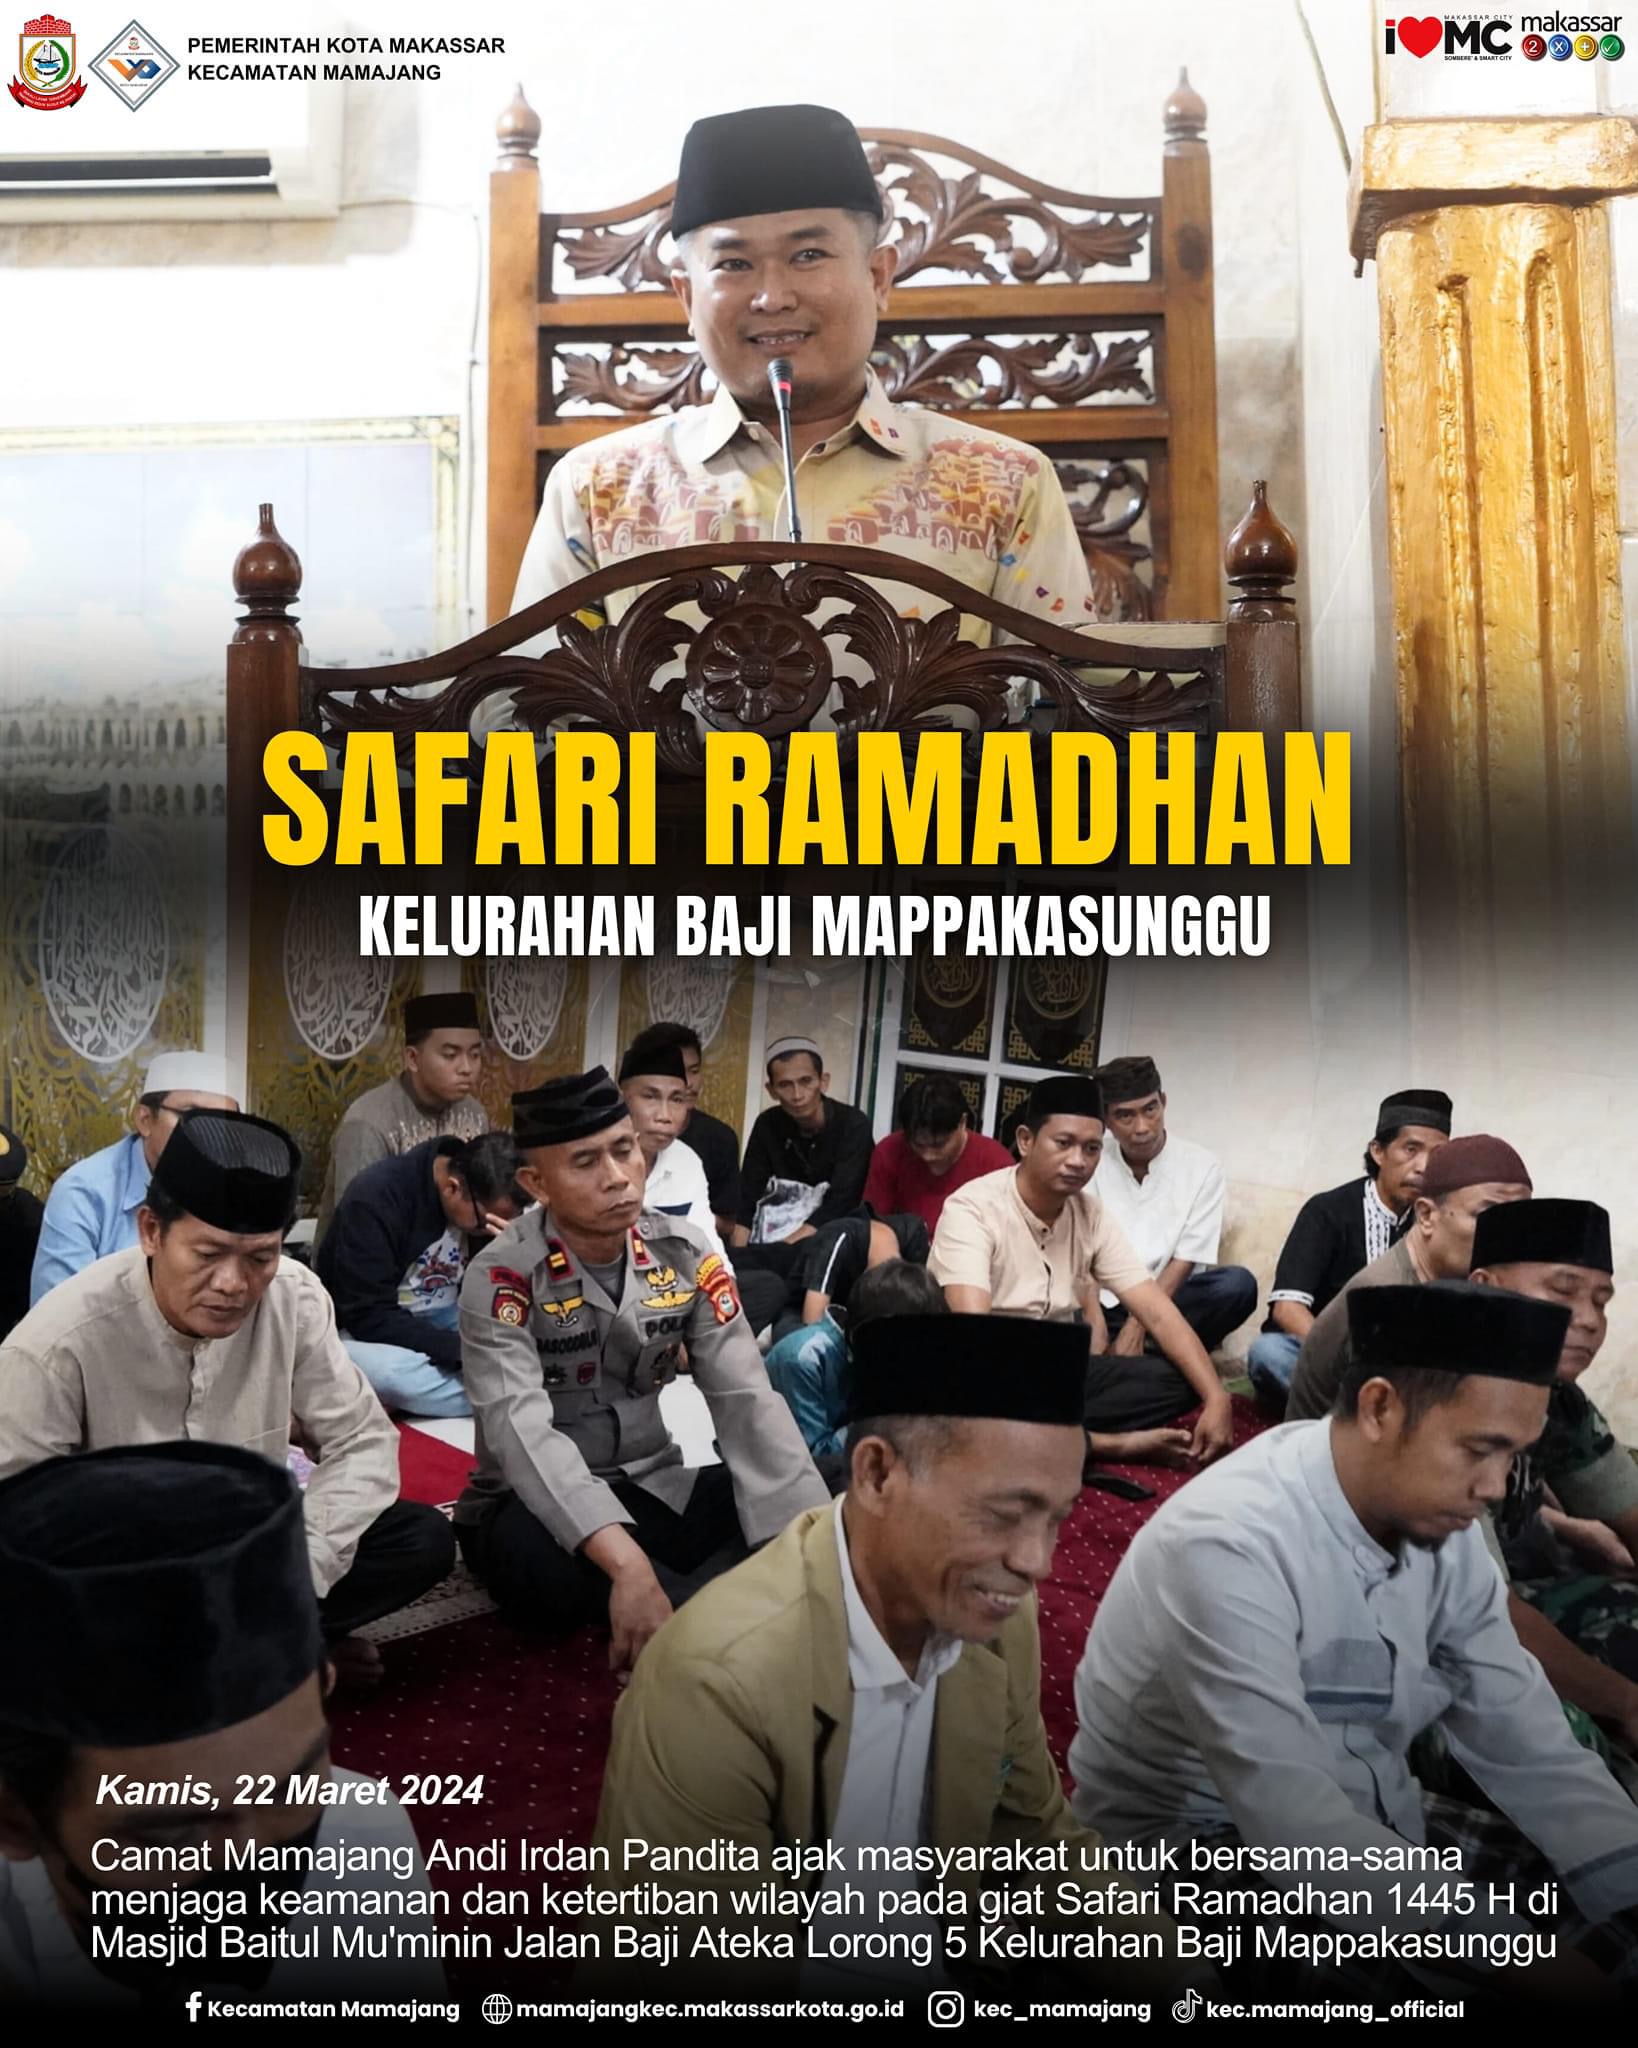 Gambar Camat Mamajang Andi Irdan Pandita ajak masyarakat untuk menjaga Kamtibmas pada giat Safari Ramadhan di Masjid Baitul Mu'minin.